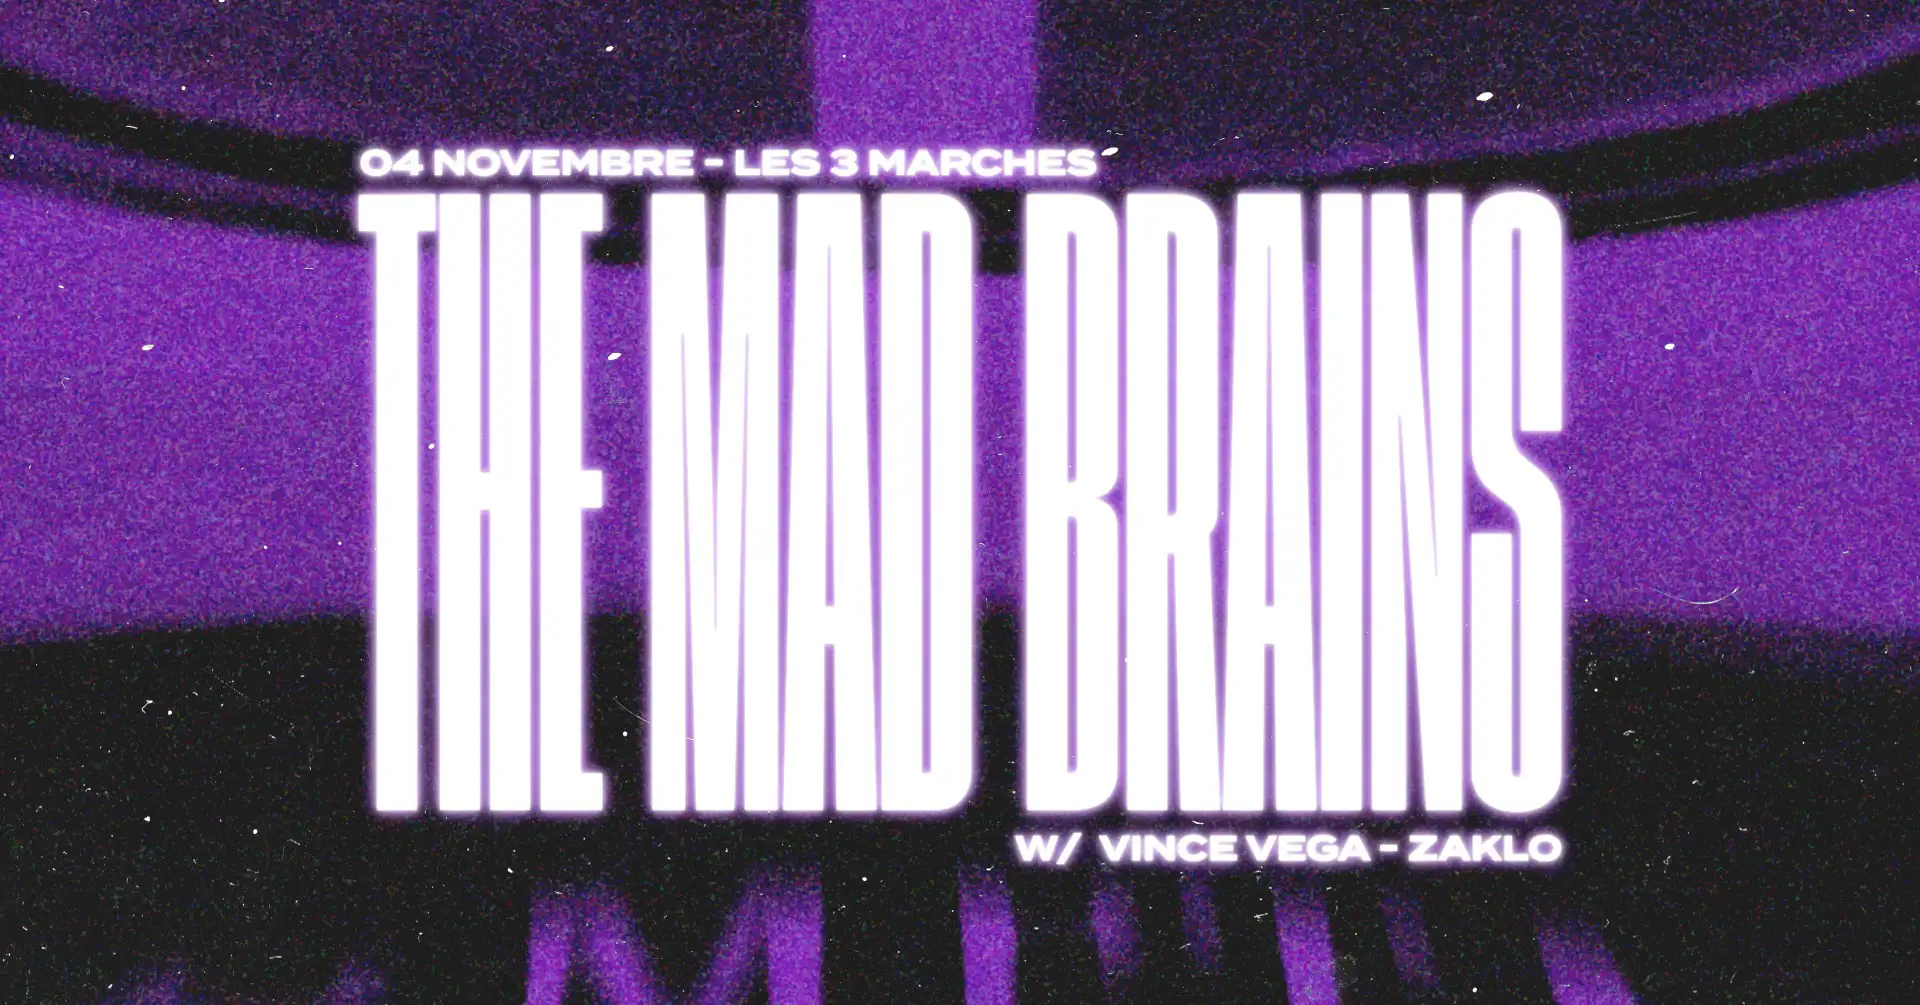 Les 3 Marches x M.A.D Brains, évènement propulsé par M.A.D Brains, qui aura lieu le 3 nov 2022